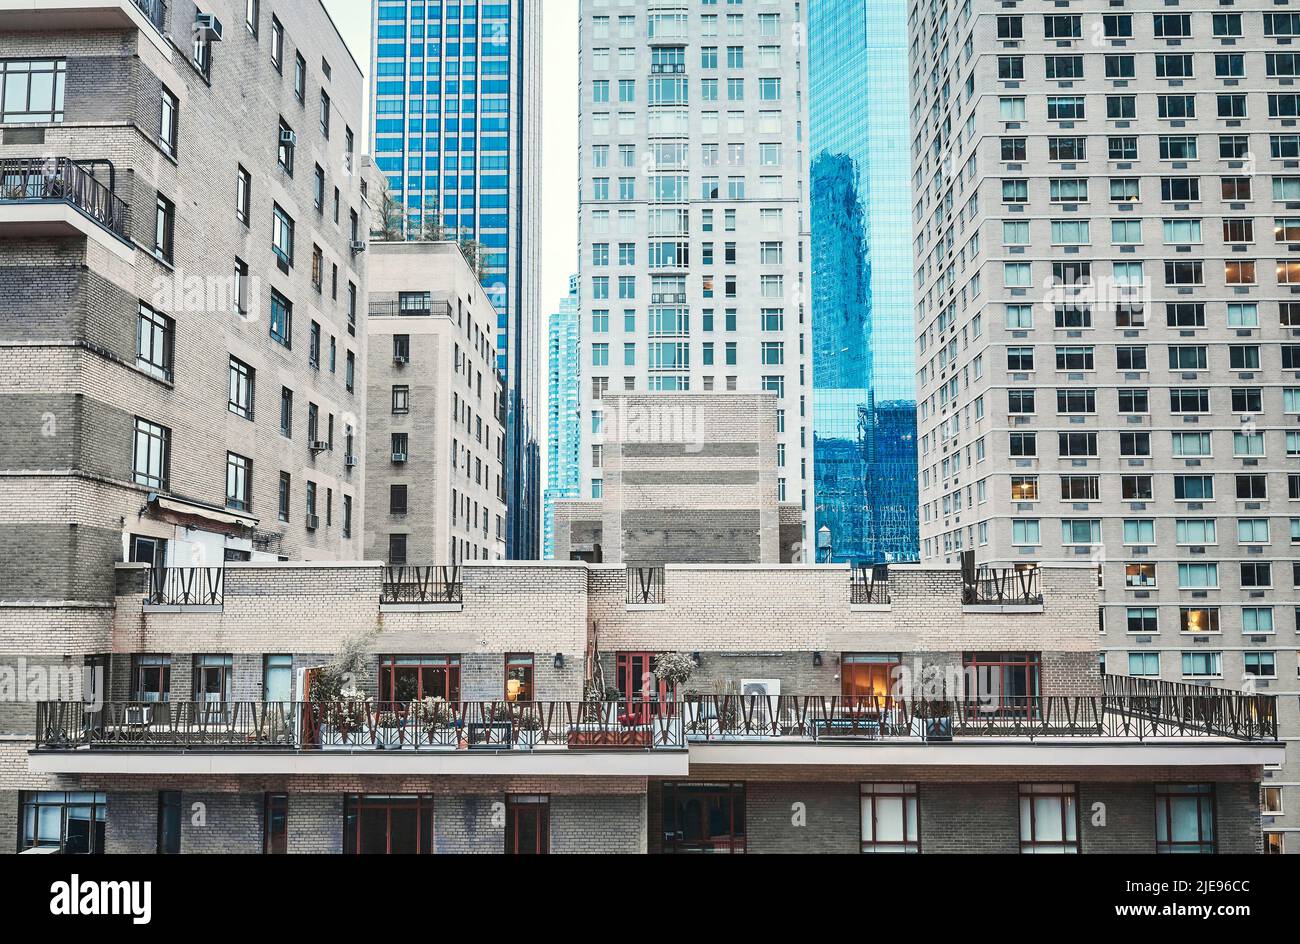 Farbtonbild der New Yorker Architektur, Manhattan, USA. Stockfoto